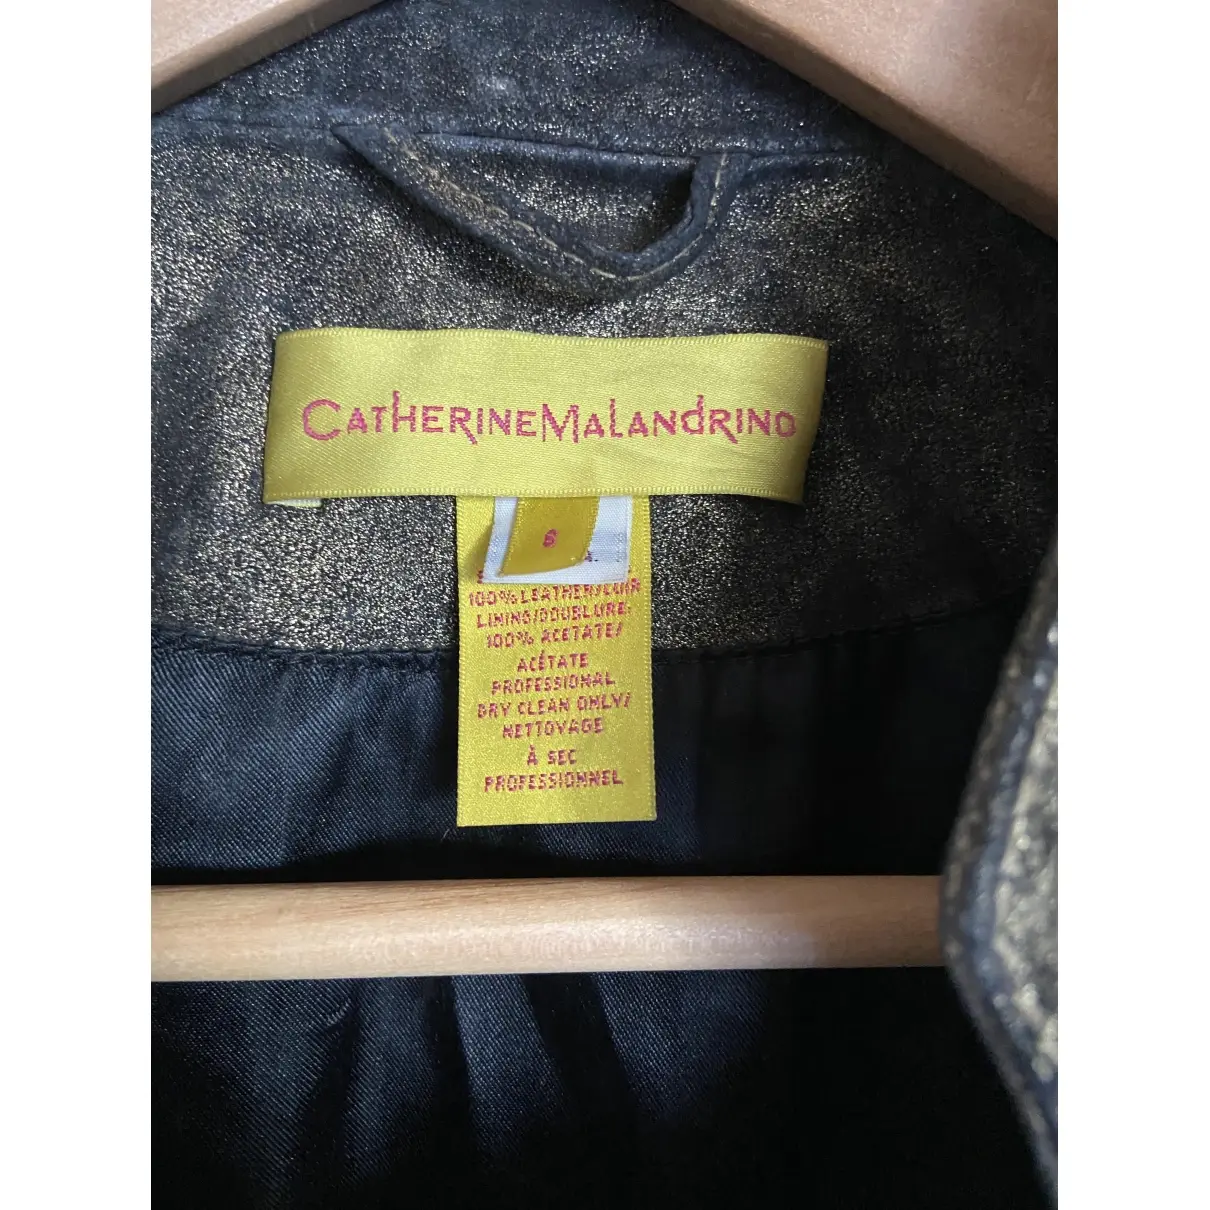 Buy Catherine Malandrino Leather jacket online